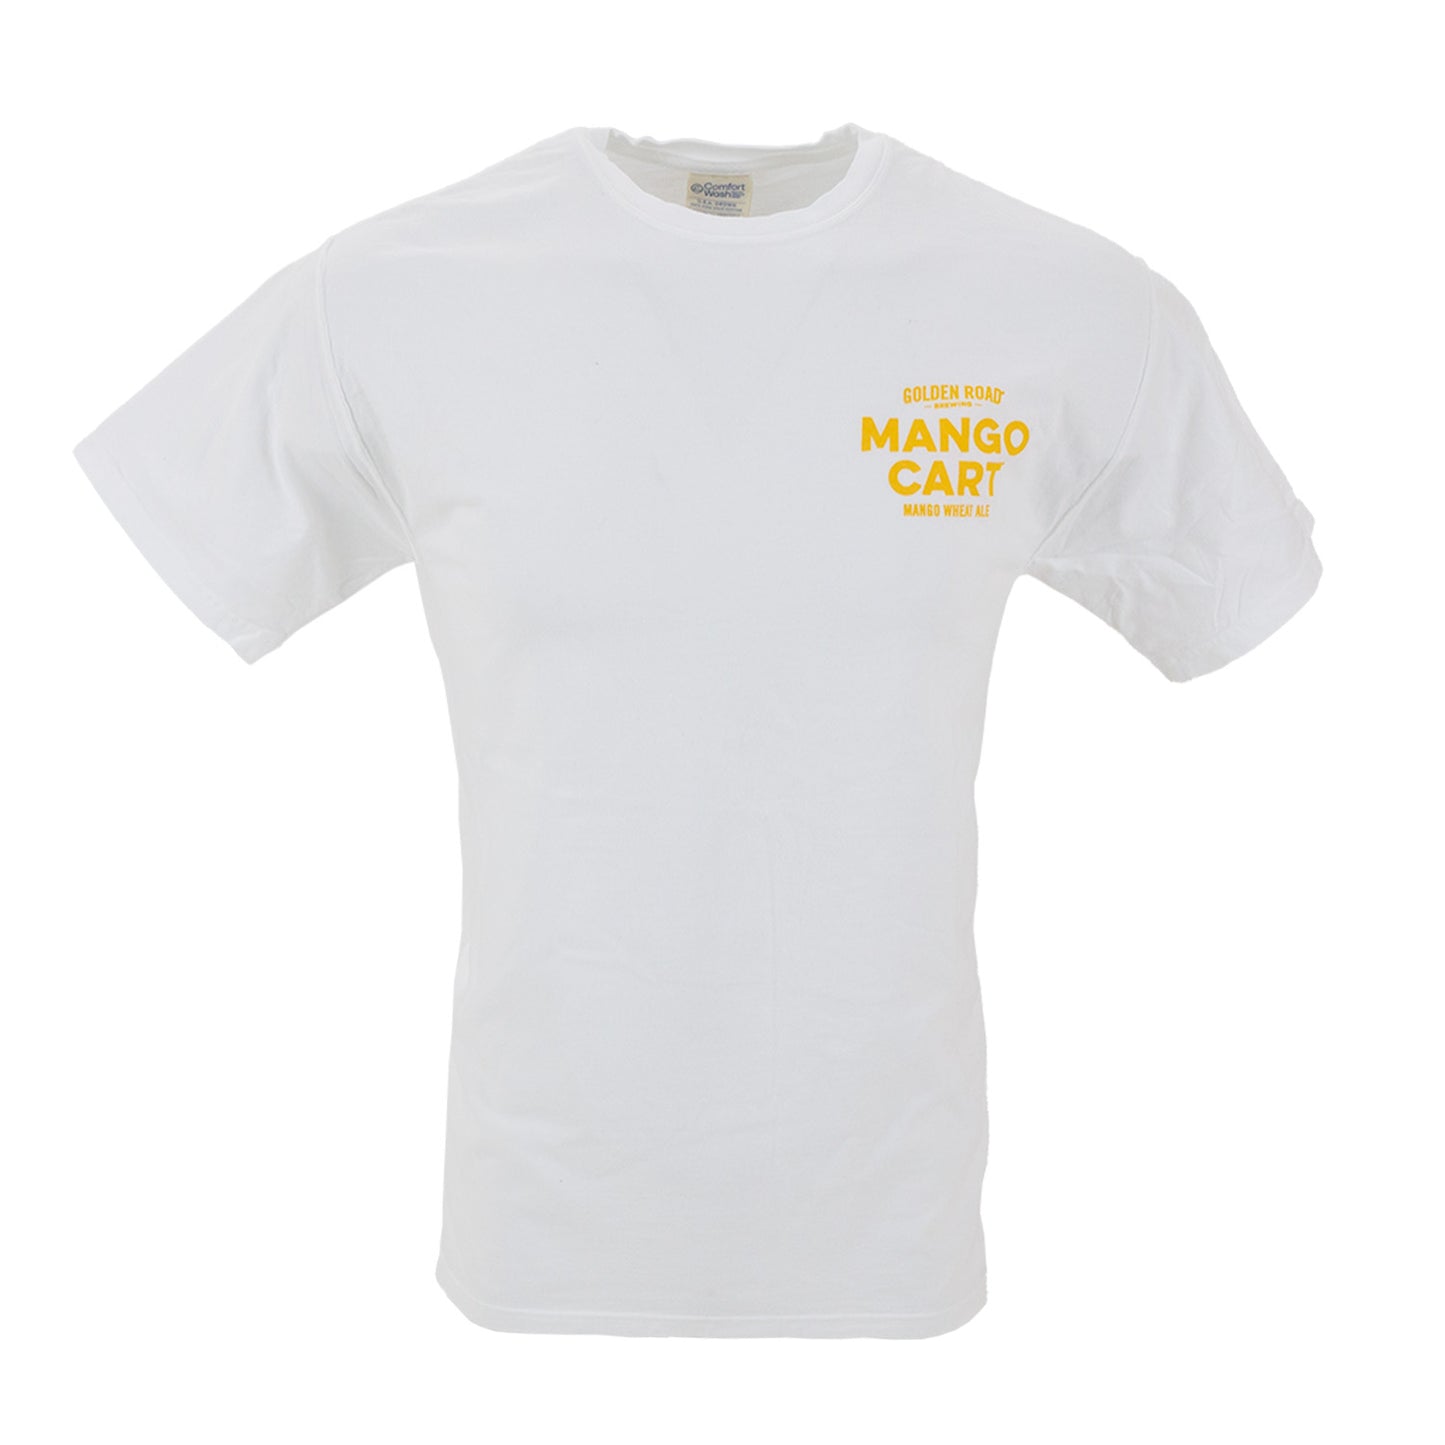 Golden Road Mango Cart T-Shirt